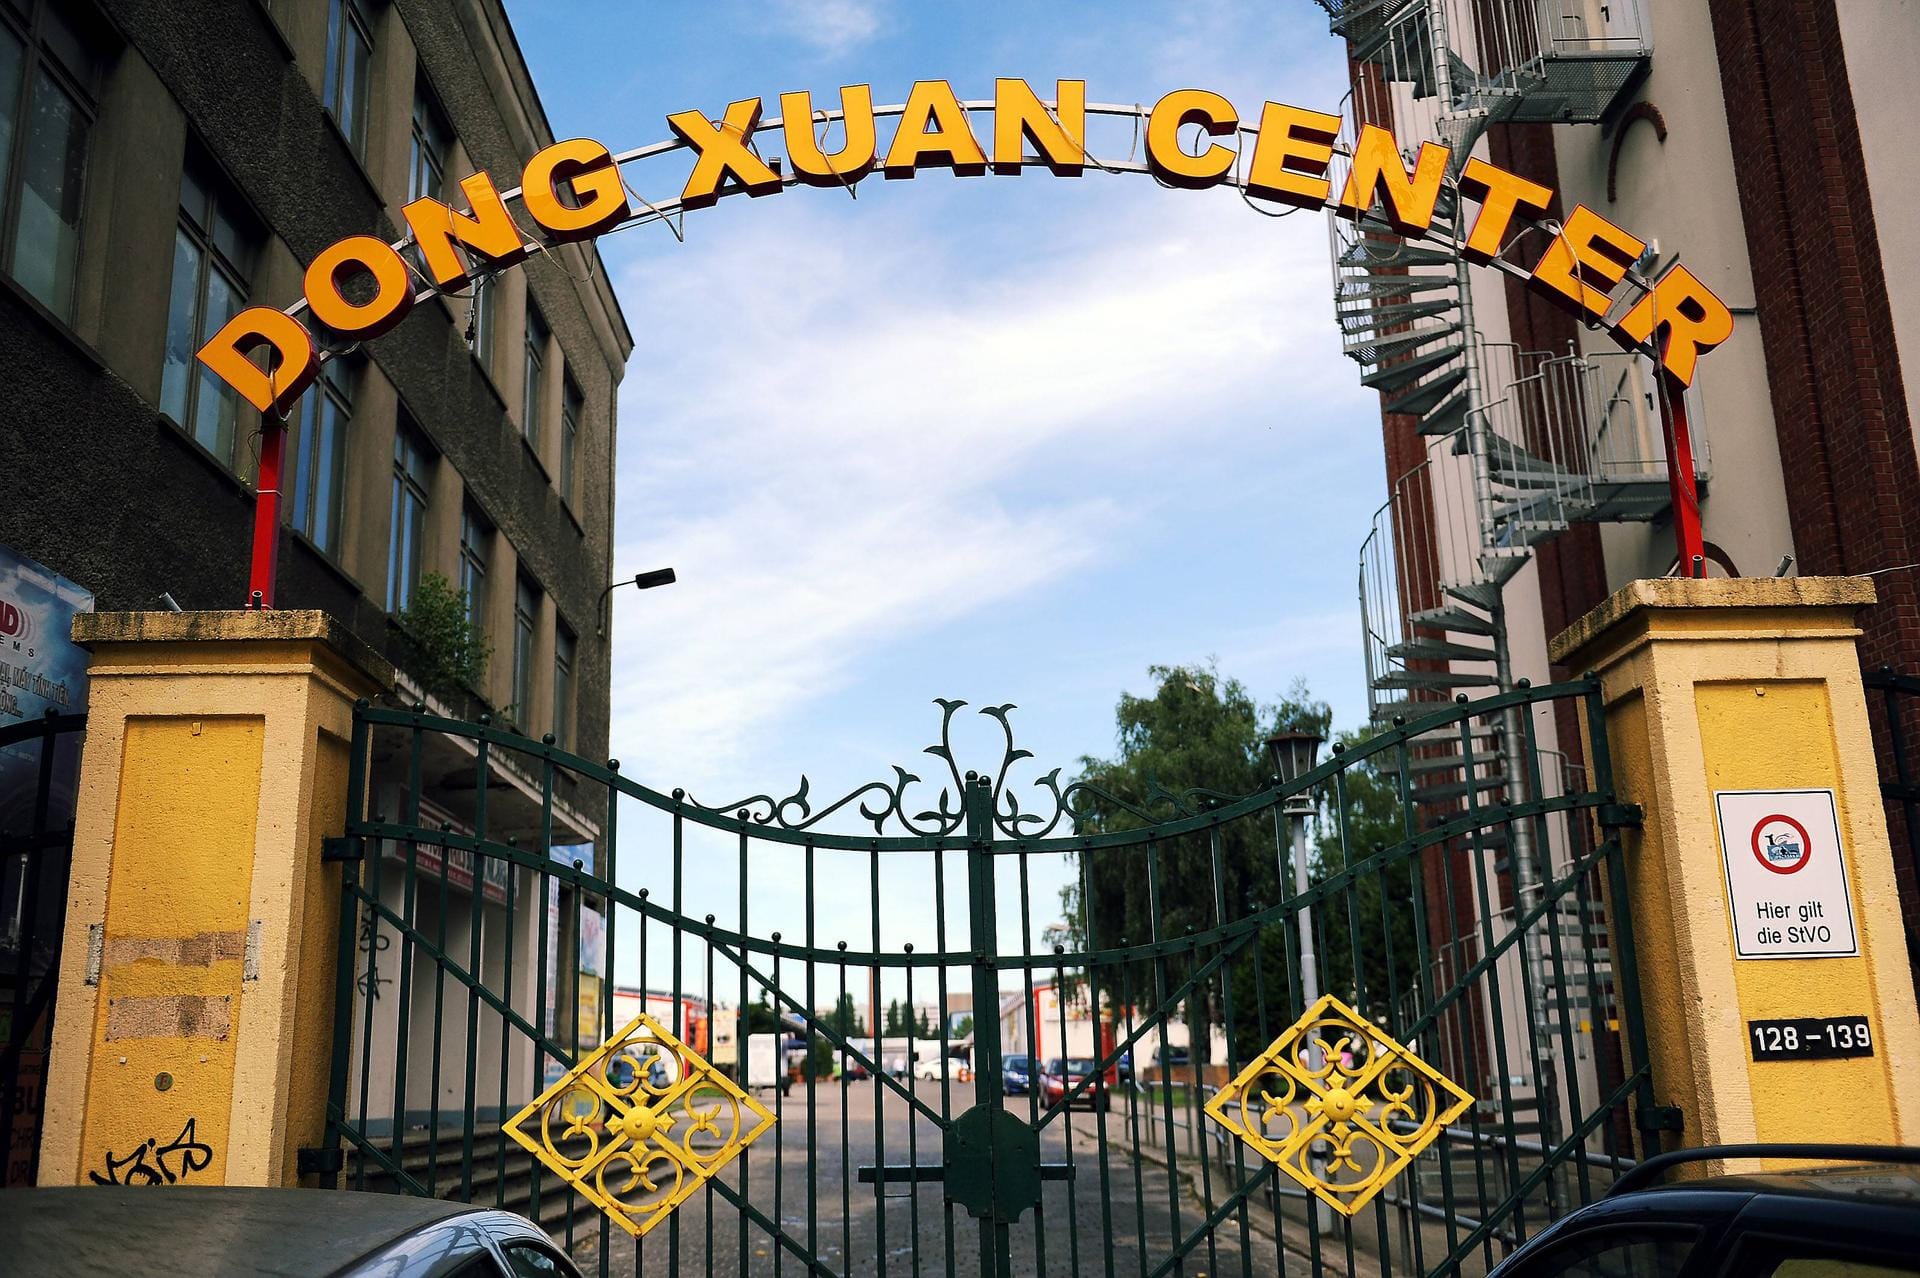 Eingang zum Dong-Xuan-Center: Das Einkaufszentrum für vor allem asiatische Produkte ist das größte seiner Art in Europa.